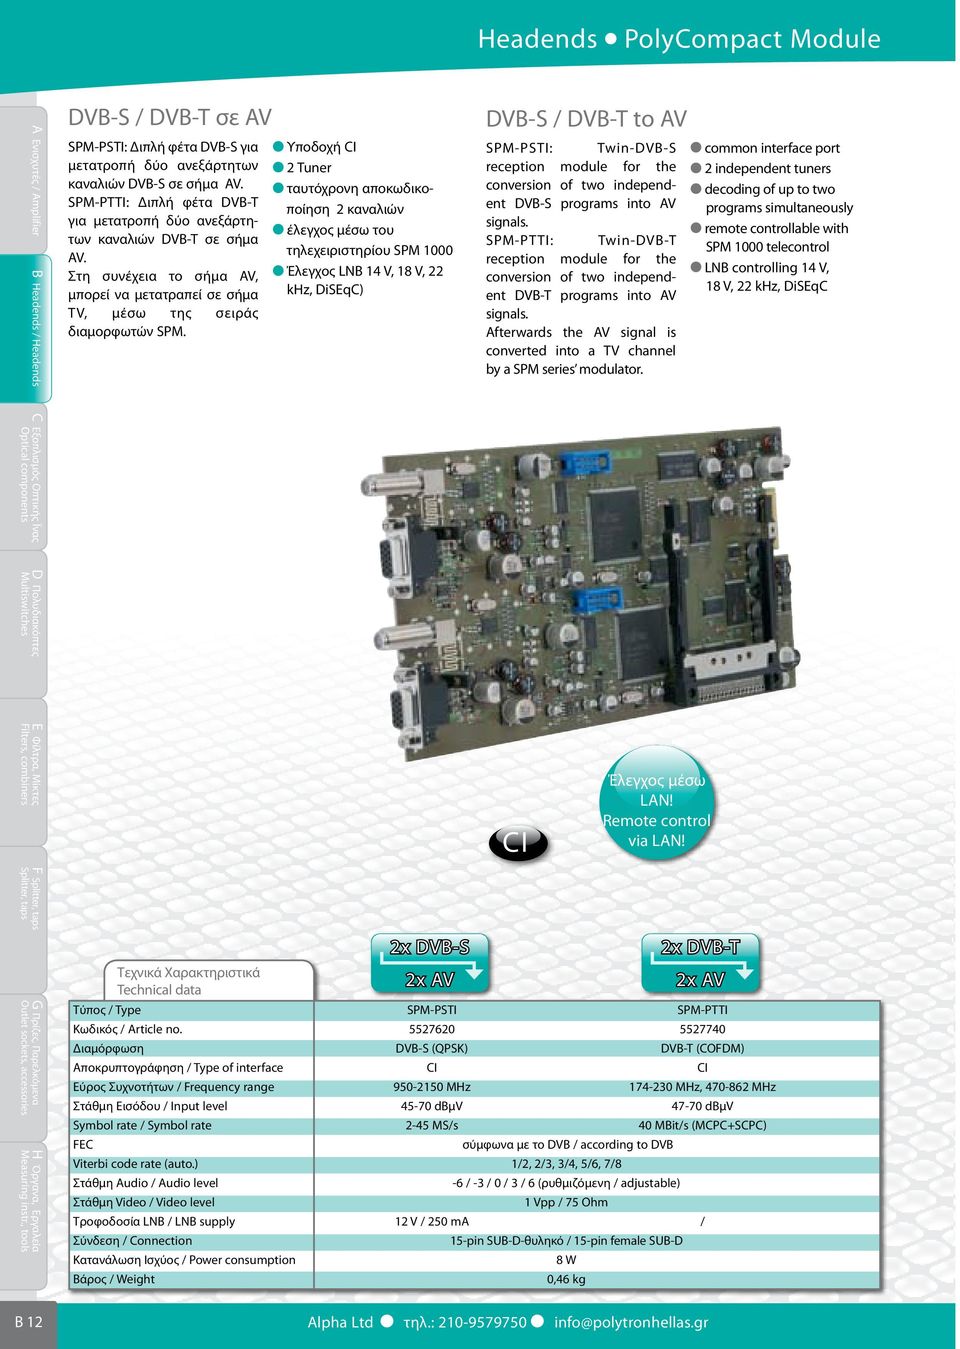 Υποδοχή CI 2 Tuner ταυτόχρονη αποκωδικοποίηση 2 καναλιών έλεγχος μέσω του τηλεχειριστηρίου SPM 1000 Έλεγχος LNB 14 V, 18 V, 22 khz, DiSEqC) DVB-S / DVB-T to AV SPM-PSTI: Twin-DVB-S reception module